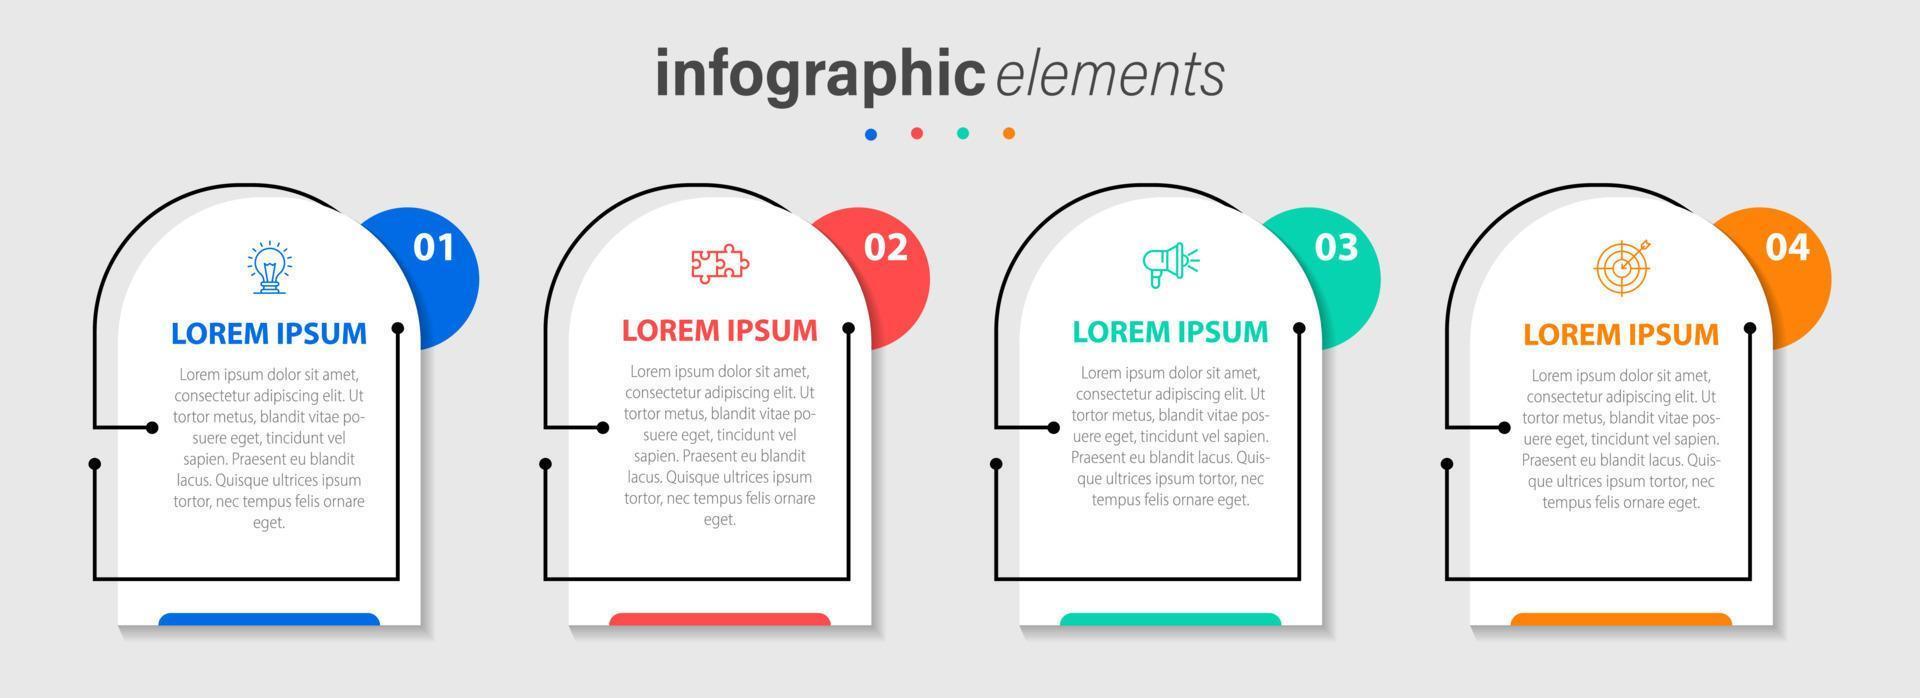 företag infographic element mall design med ikoner och 4 alternativ eller steg. vektor illustration.